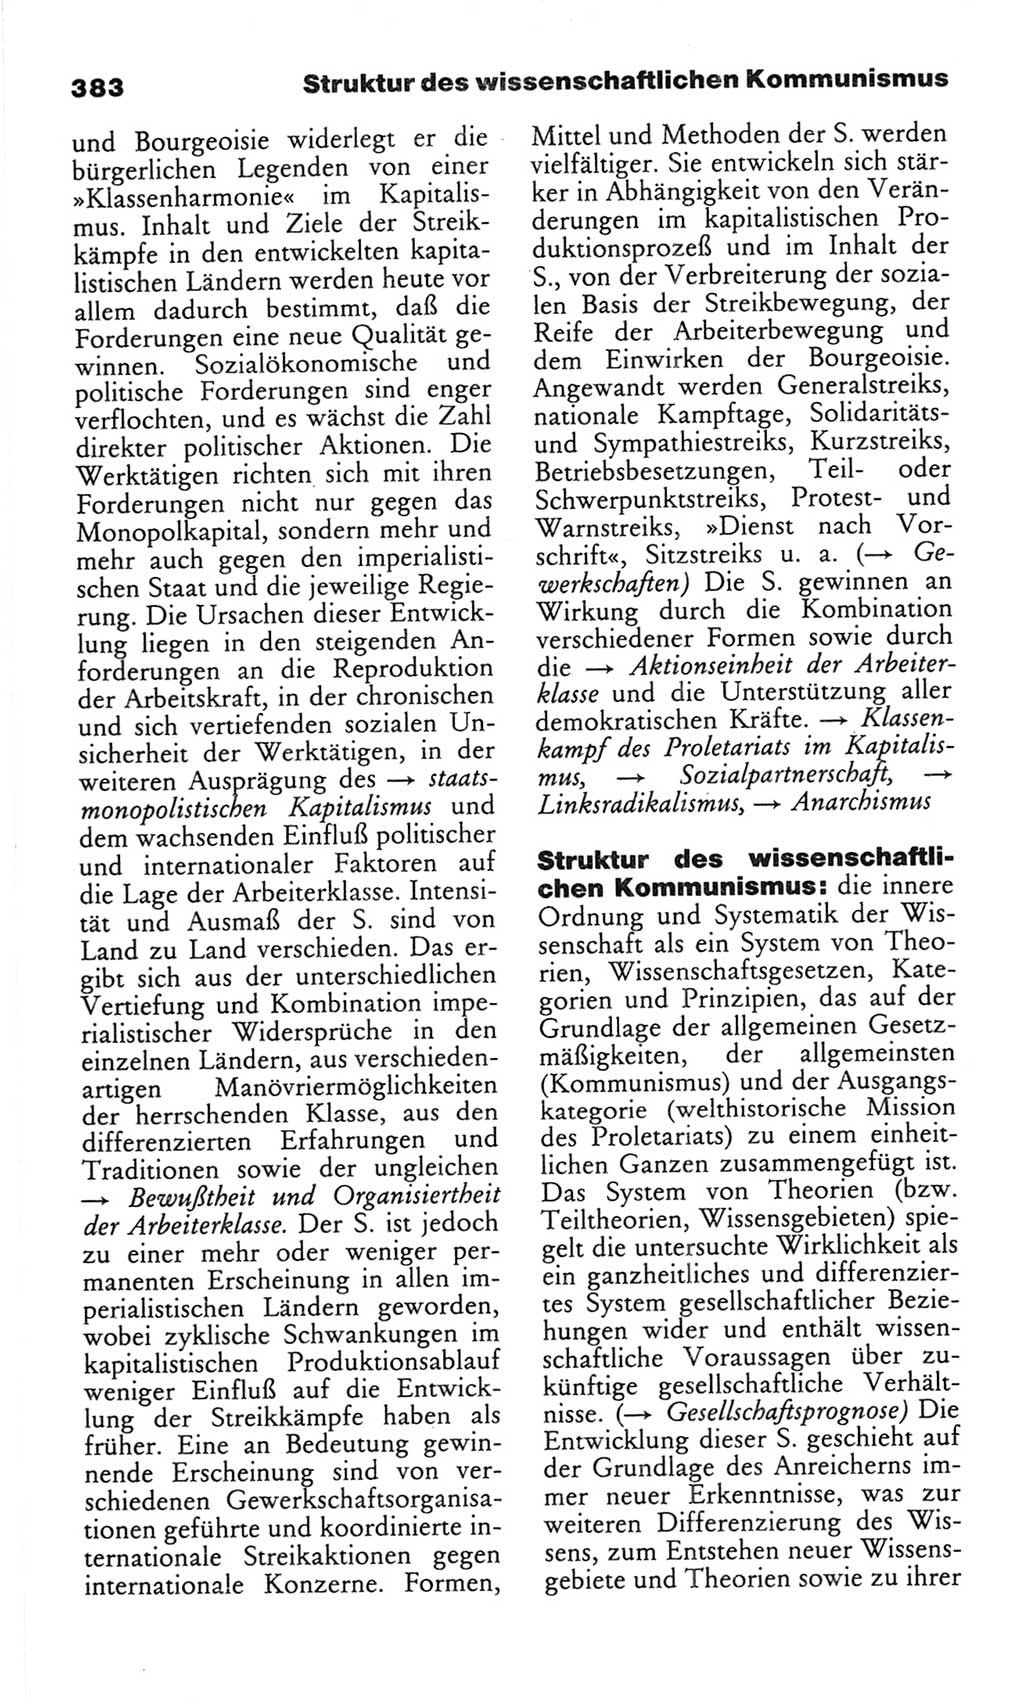 Wörterbuch des wissenschaftlichen Kommunismus [Deutsche Demokratische Republik (DDR)] 1982, Seite 383 (Wb. wiss. Komm. DDR 1982, S. 383)